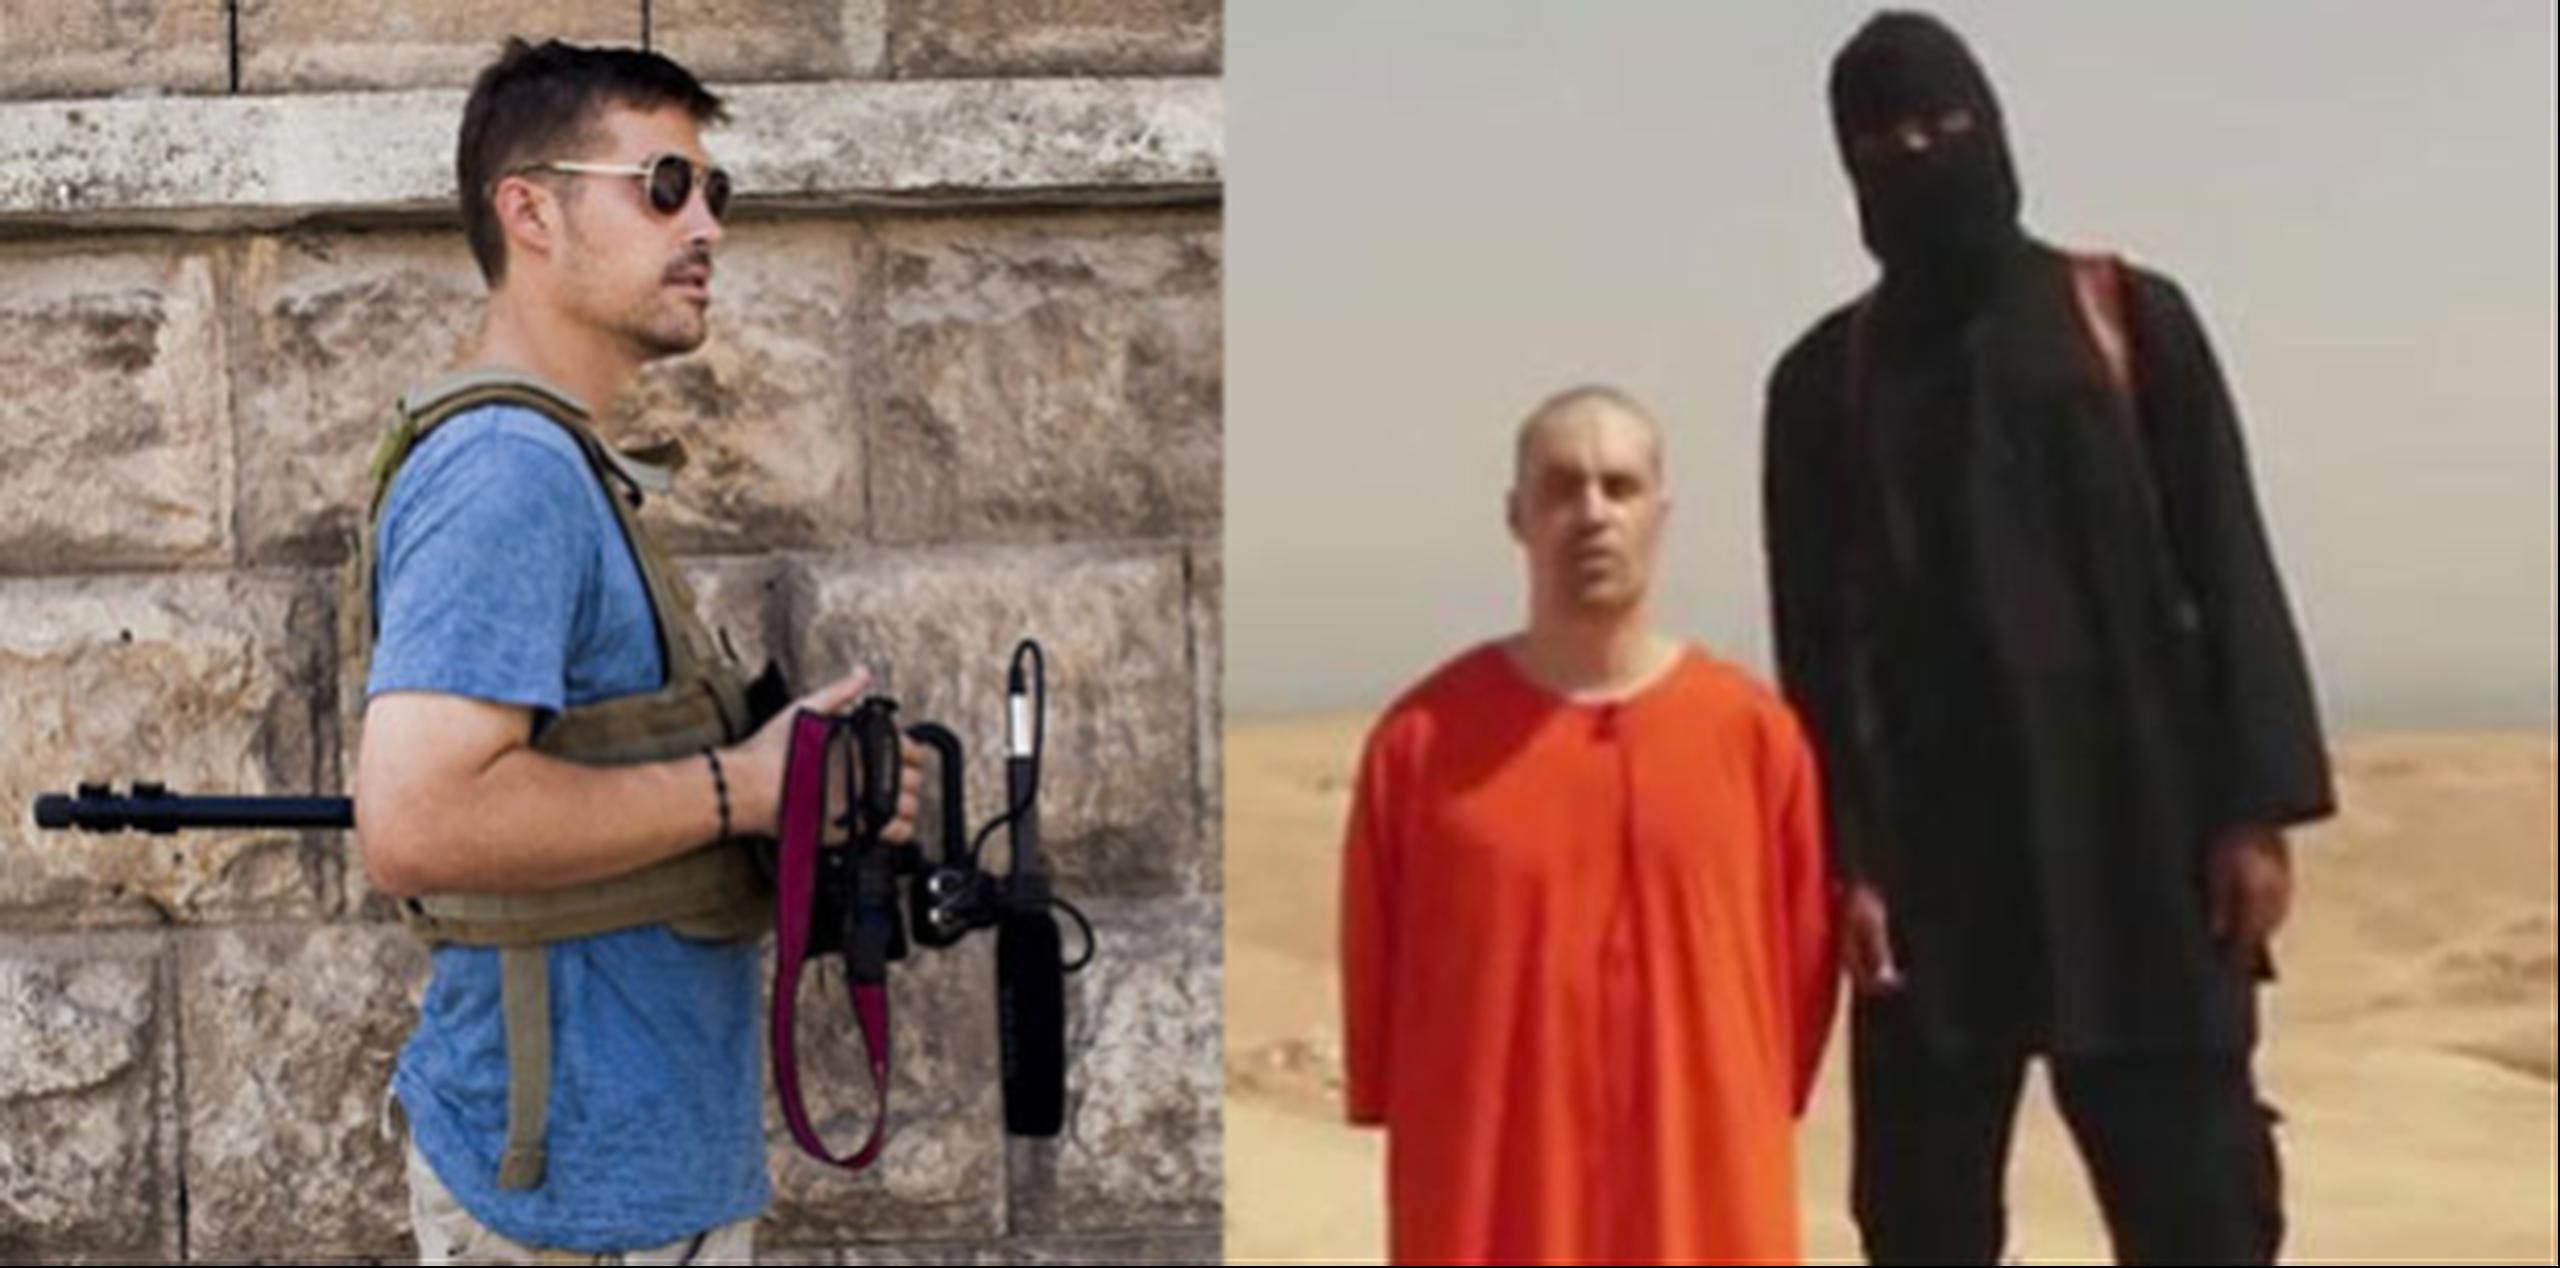 James Foley hizo memorizar a uno de sus compañeros de cautiverio un mensaje personal para sus seres queridos repleto de recuerdos y mensajes esperanzadores sobre su eventual liberación(izquierda, Suministrada por GlobalPost/EFE/Nicole Tung) (derecha,Youtube)